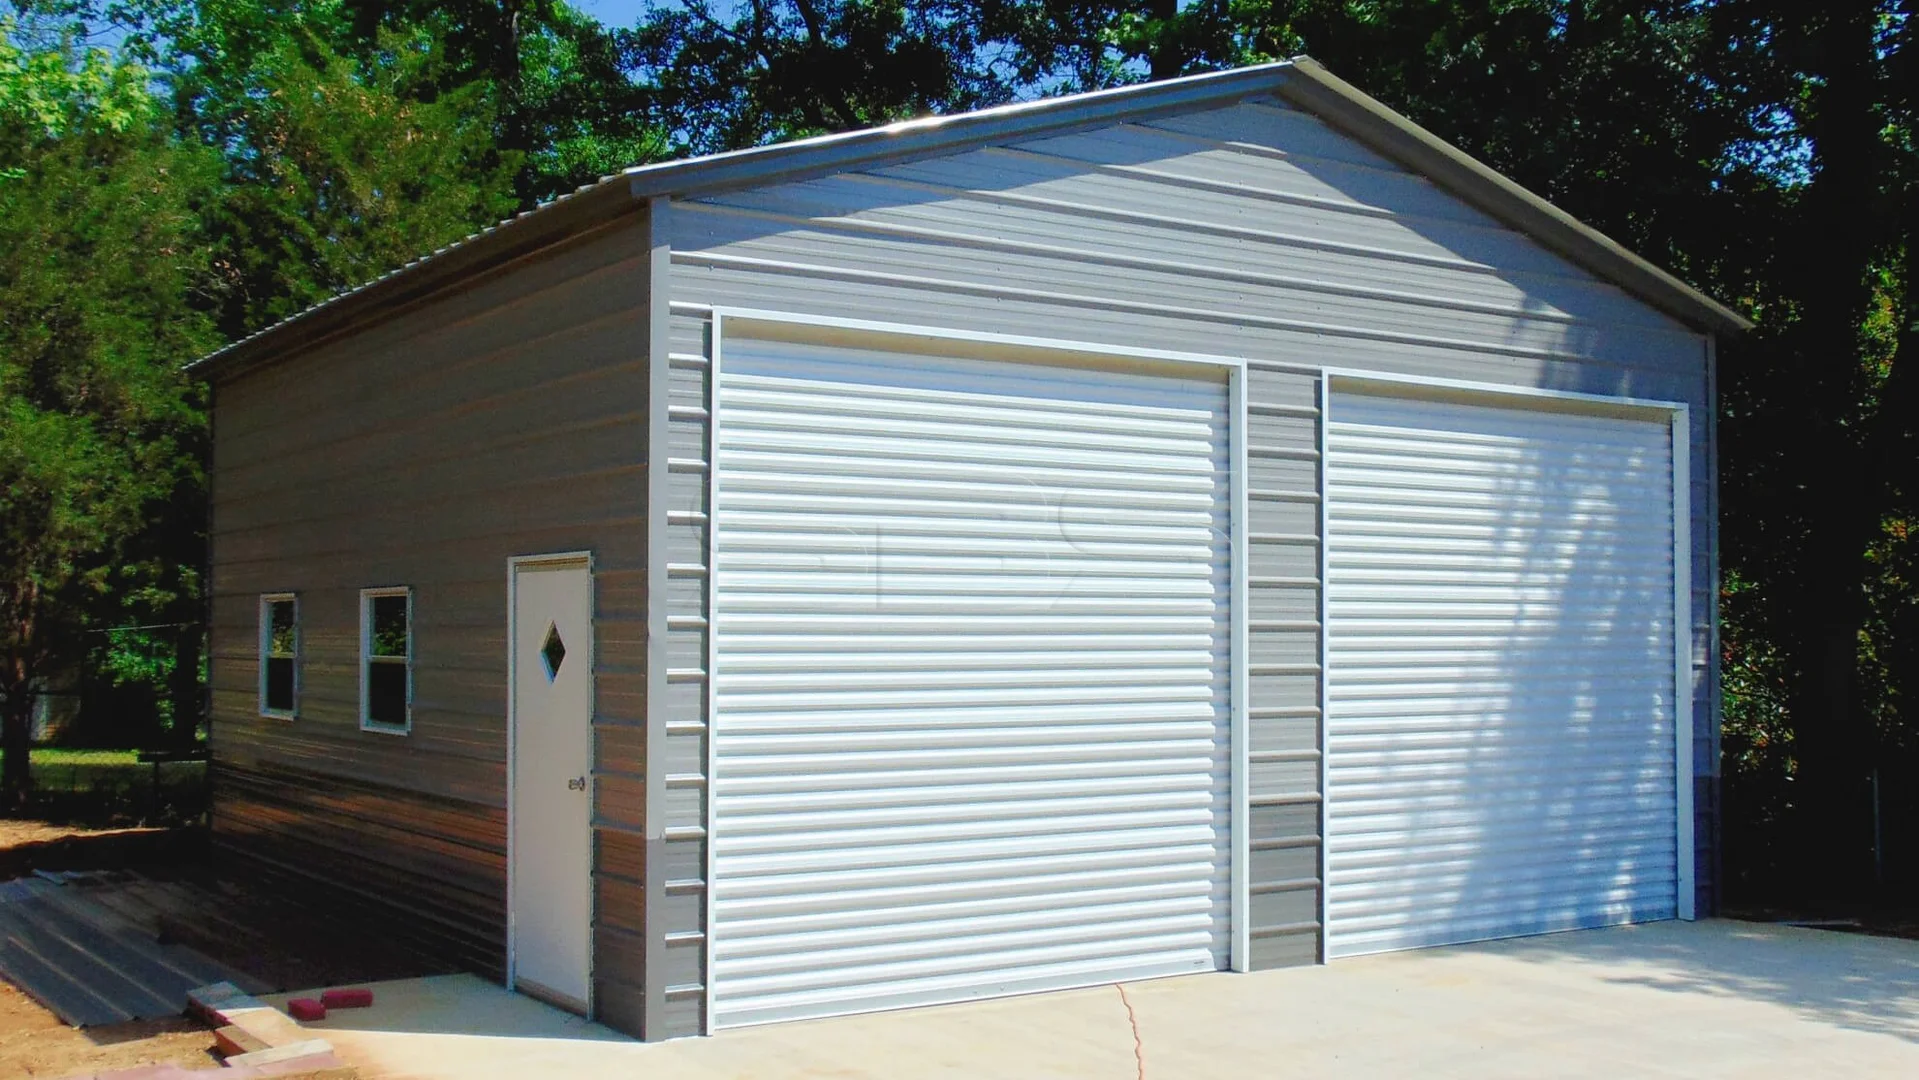 24 x 26 x 12 custom building with two garage doors